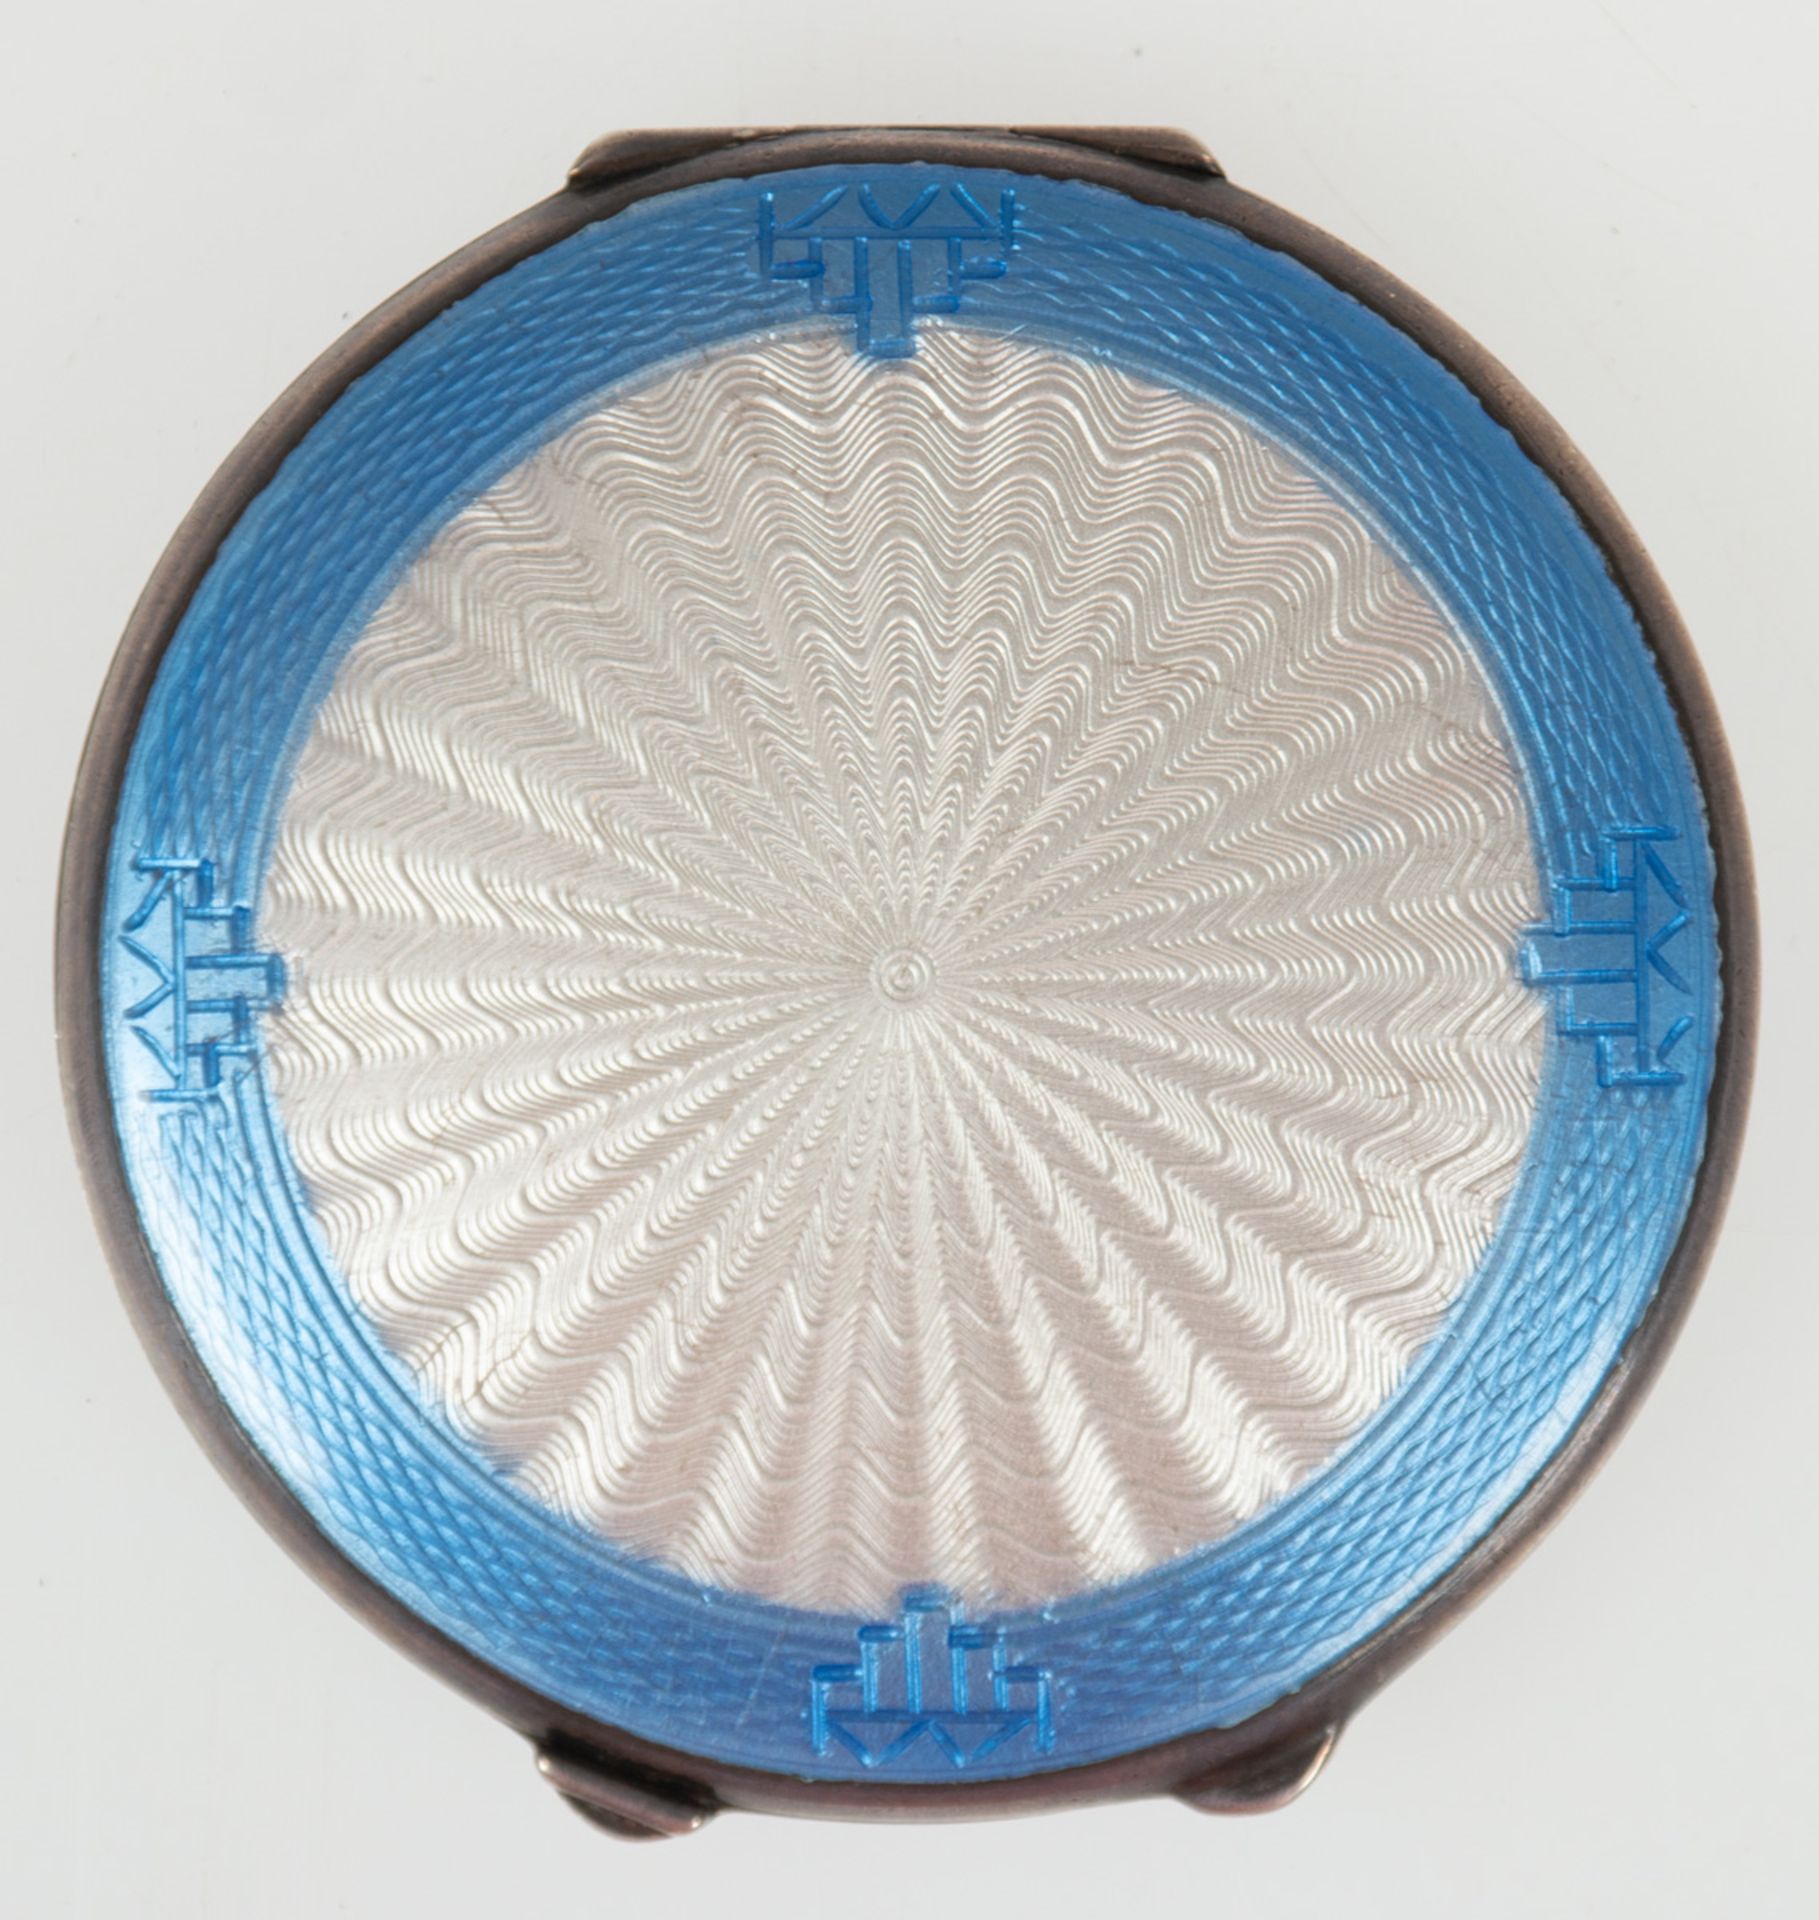 Puderdose, Birmingham 1921, Silber mit Guilloche-Emaille, Innenspiegel in Deckel, Dm. 6,8cm